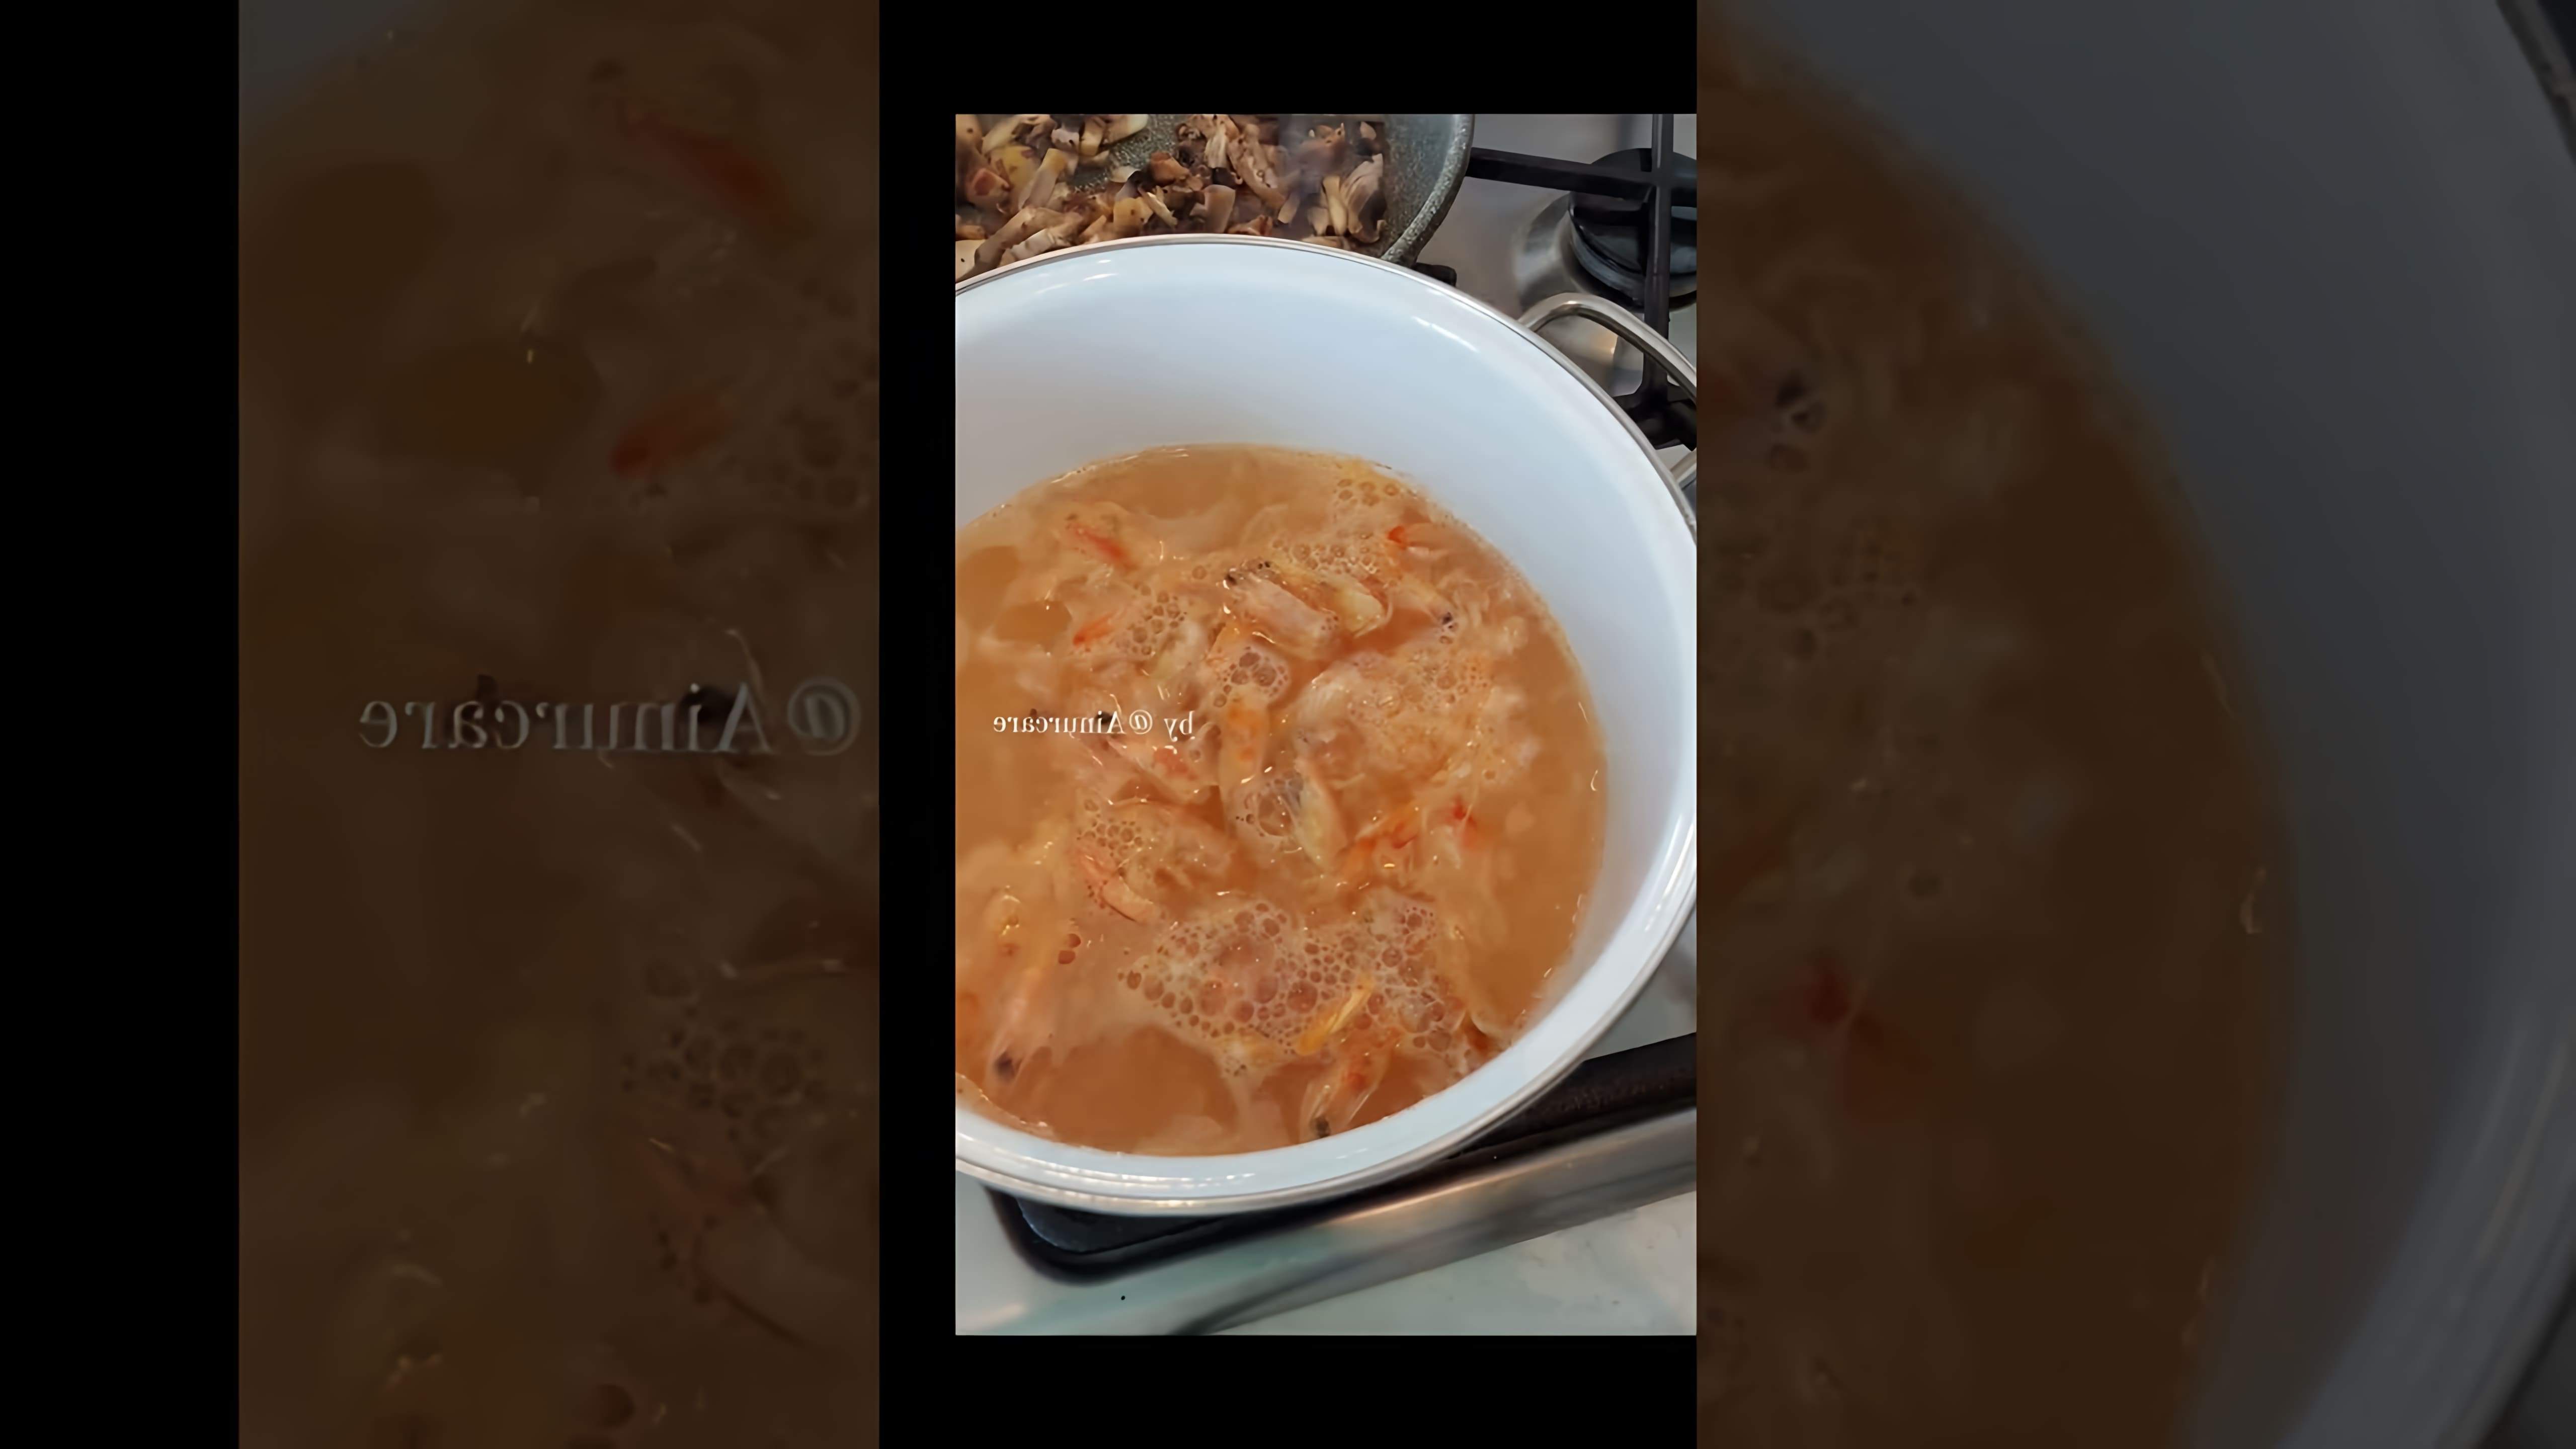 В этом видео демонстрируется процесс приготовления острого тайского супа Том Ям с морепродуктами